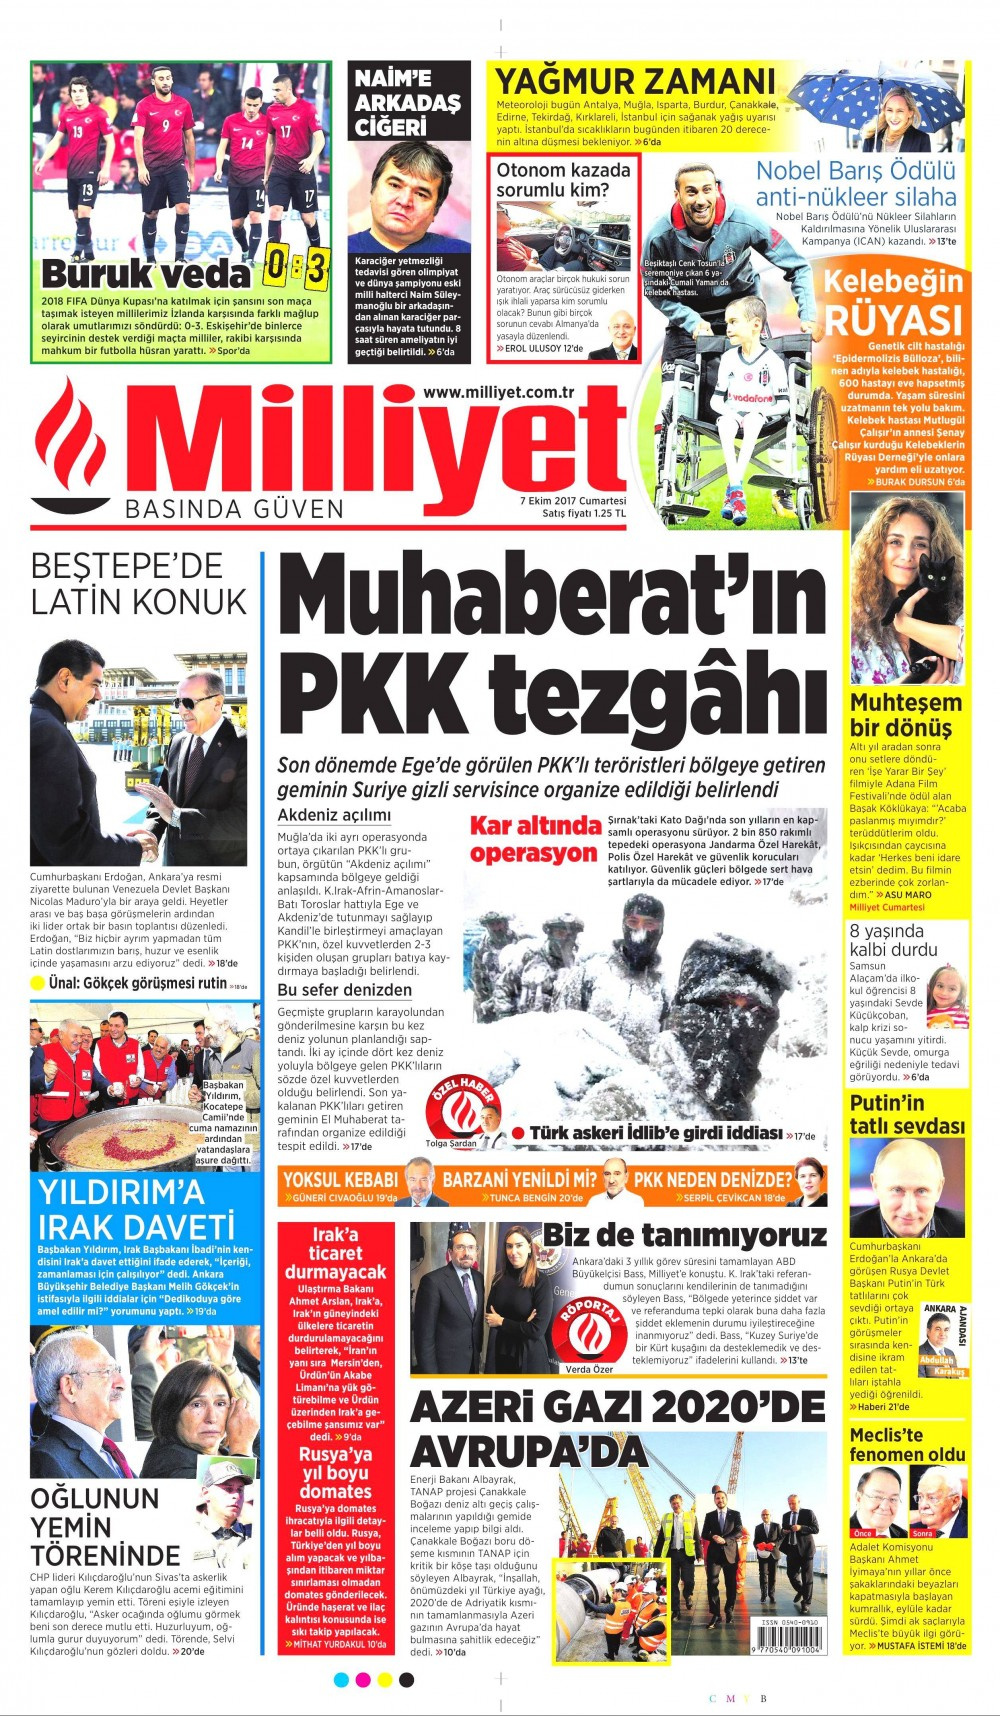 Gazete manşetleri Hürriyet - Fanatik - Milliyet 7 Ekim 2017